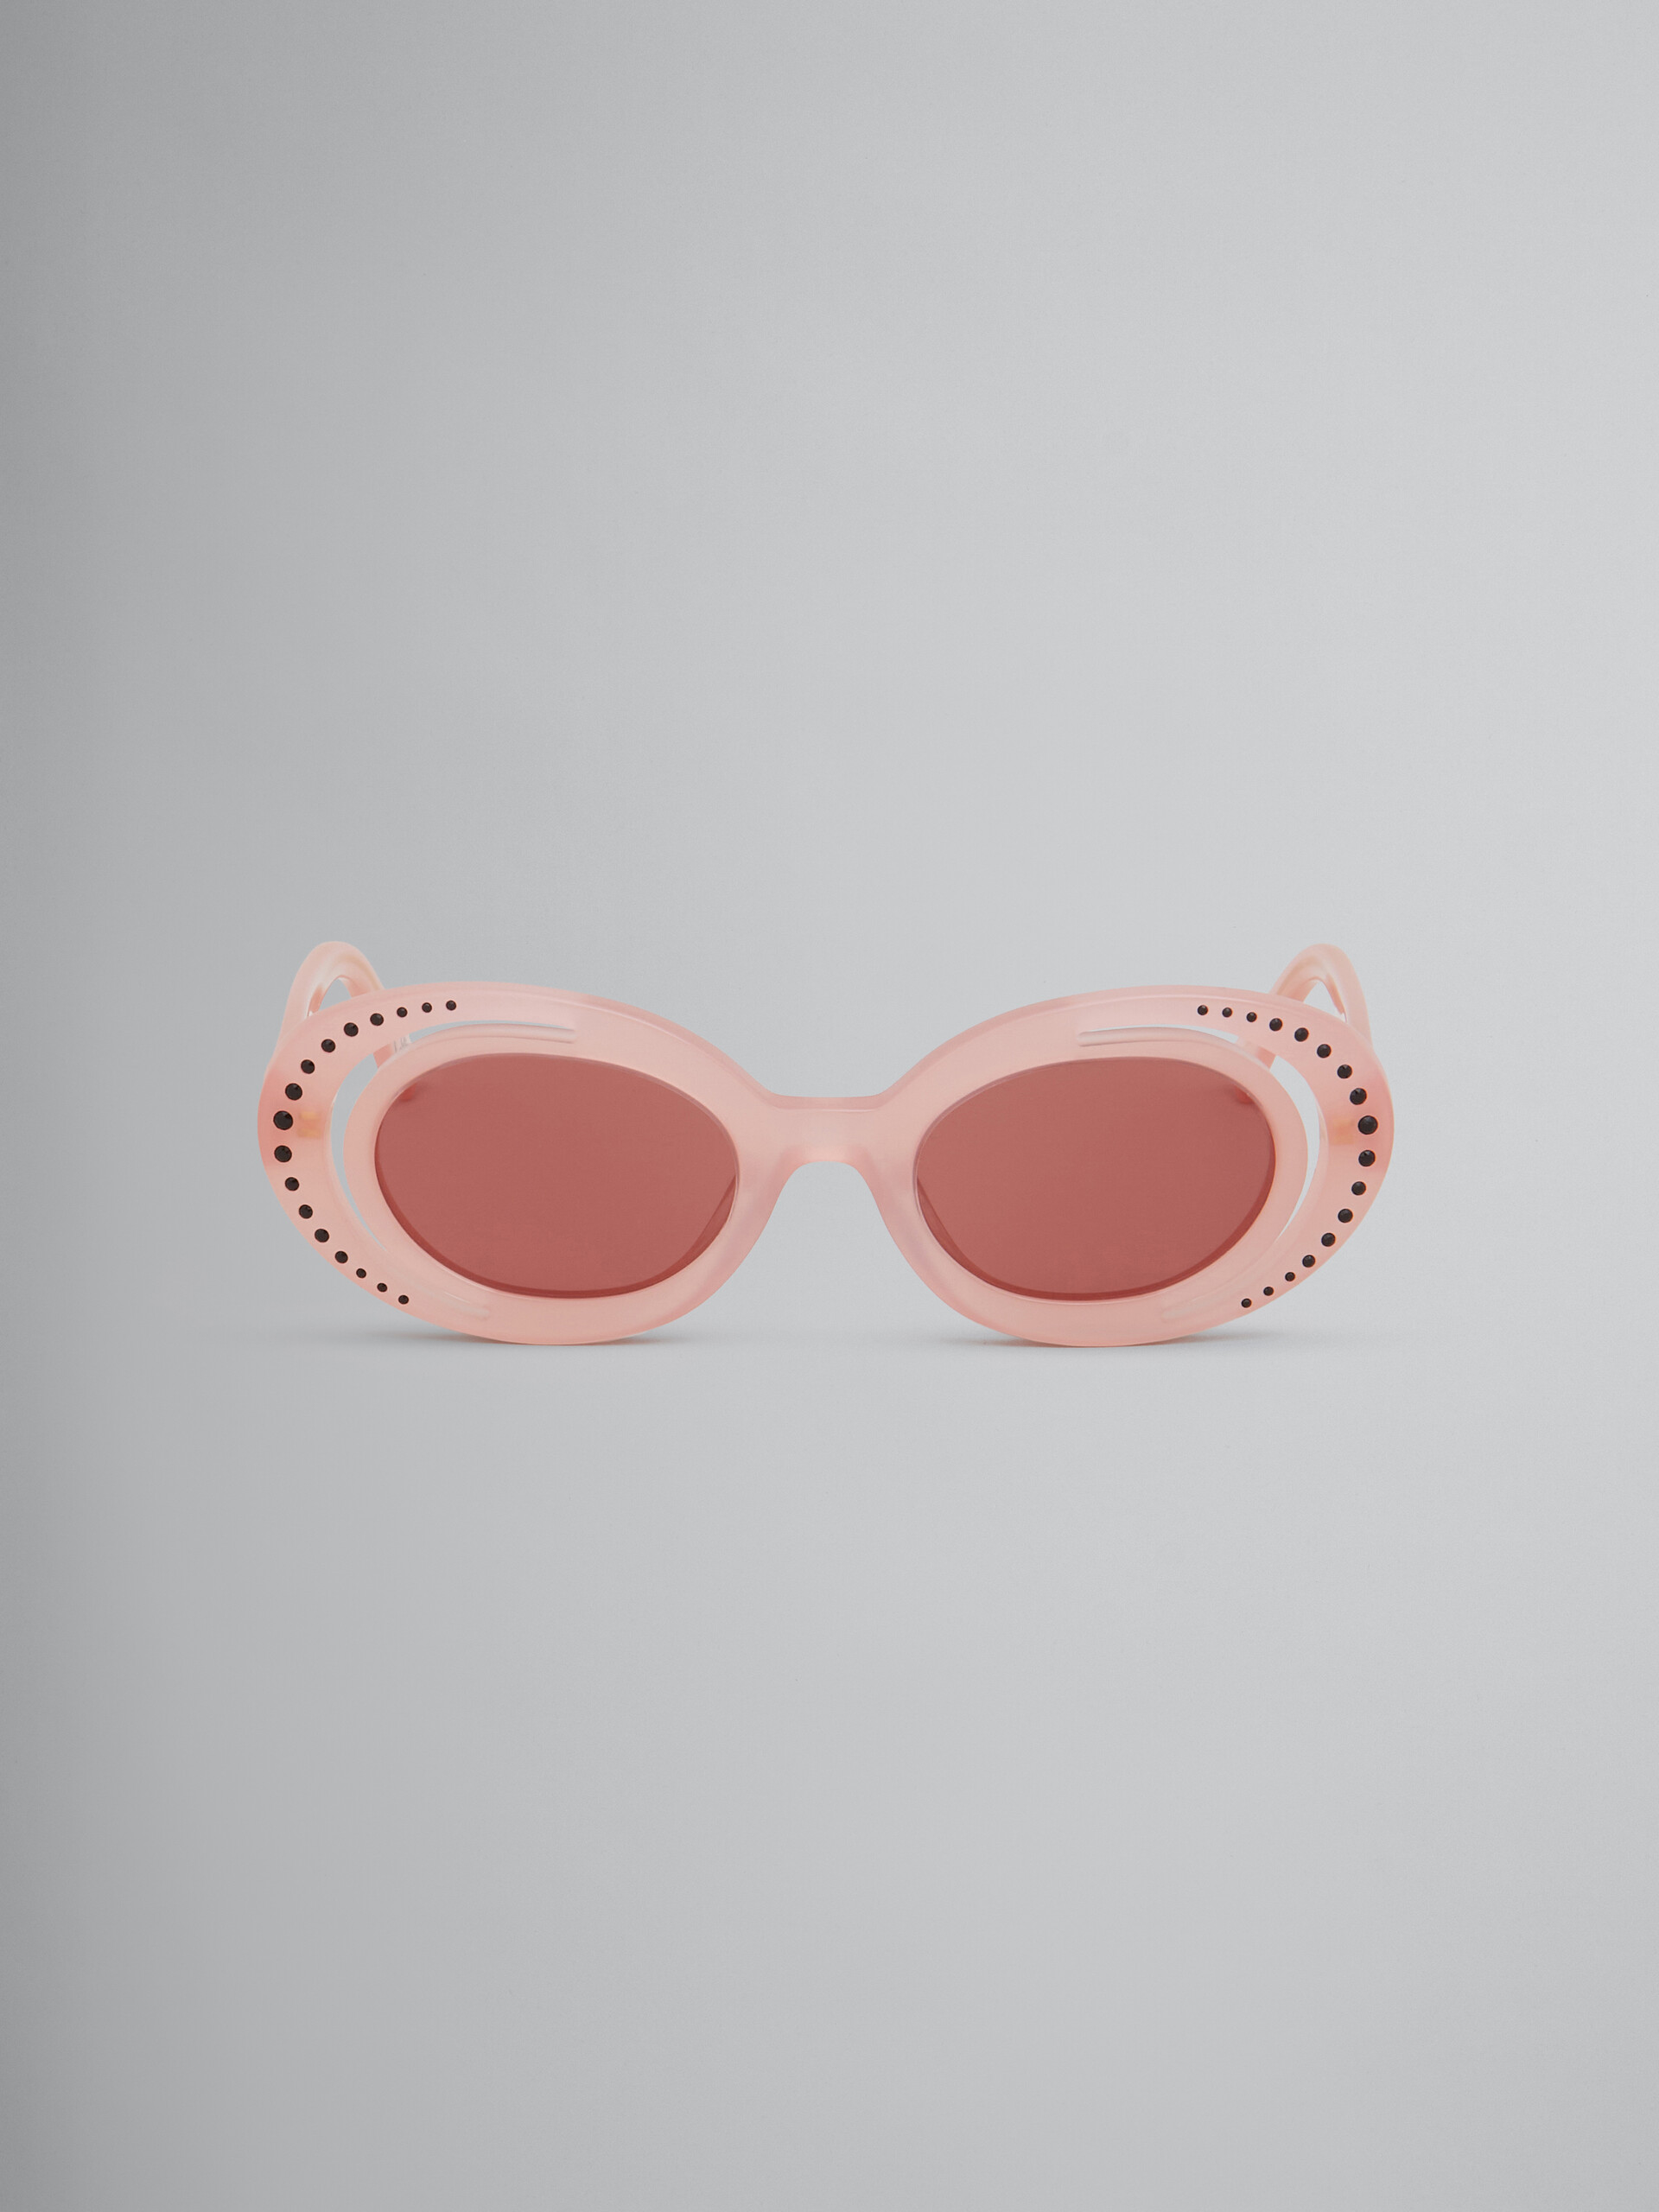 Zion Canyon powder pink sunglasses - Optical - Image 1